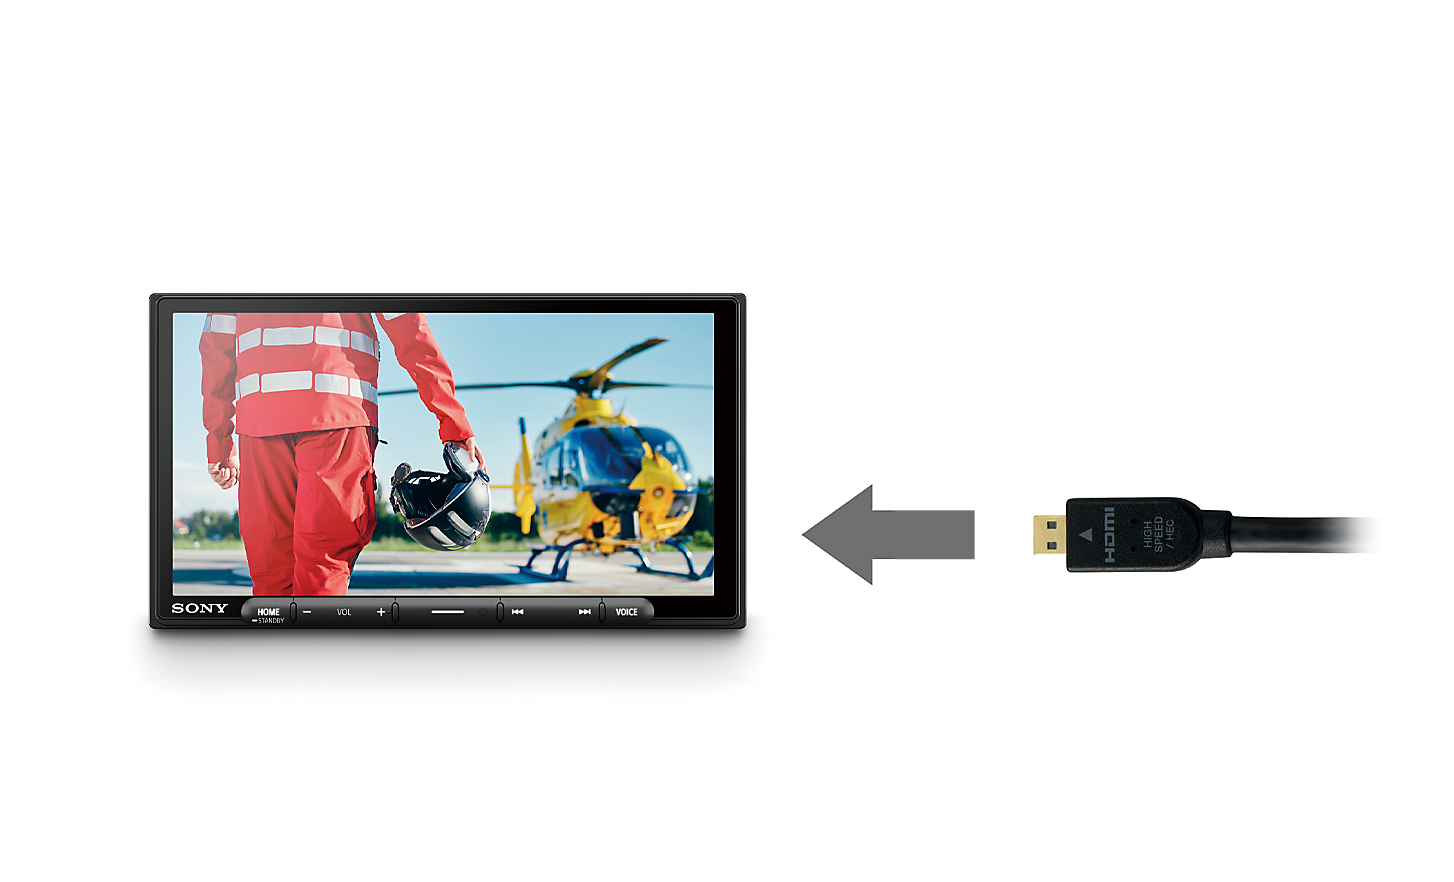 Kuva, jossa on HDMI-kaapeli ja nuoli kohti XAV-AX6050-mediavastaanotinta, jonka näytössä näkyvät lentäjä ja helikopteri